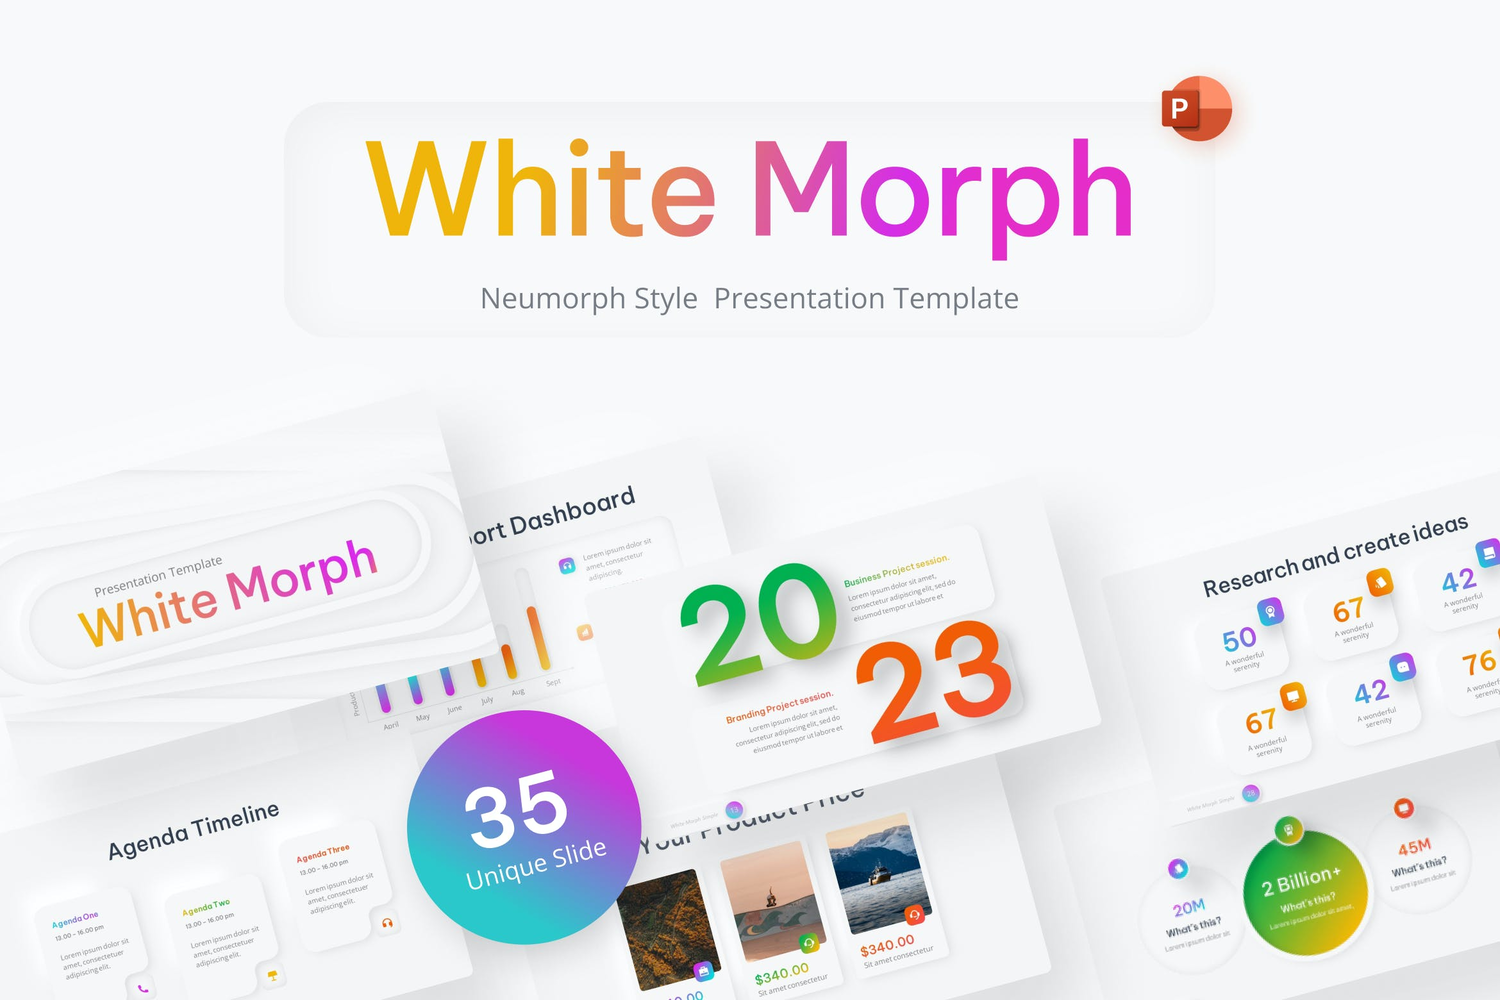 4415 明暗双色新拟物风项目分析数据报告年终总结PPT模板 White Morph Neumorph PowerPoint Template@GOOODME.COM